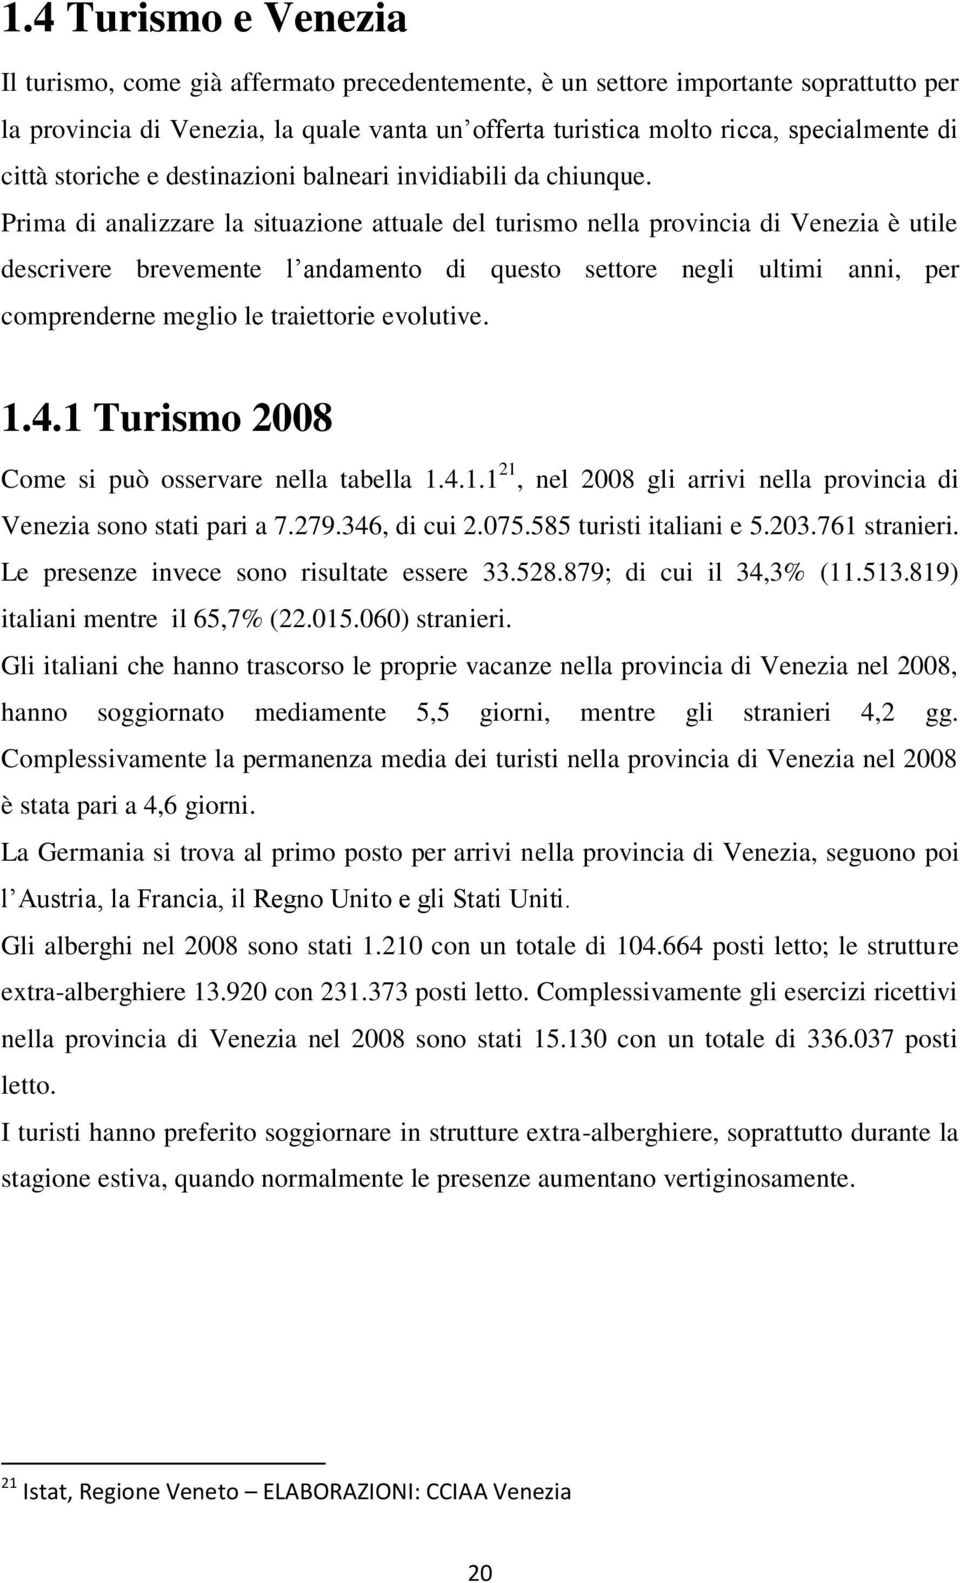 Prima di analizzare la situazione attuale del turismo nella provincia di Venezia è utile descrivere brevemente l andamento di questo settore negli ultimi anni, per comprenderne meglio le traiettorie